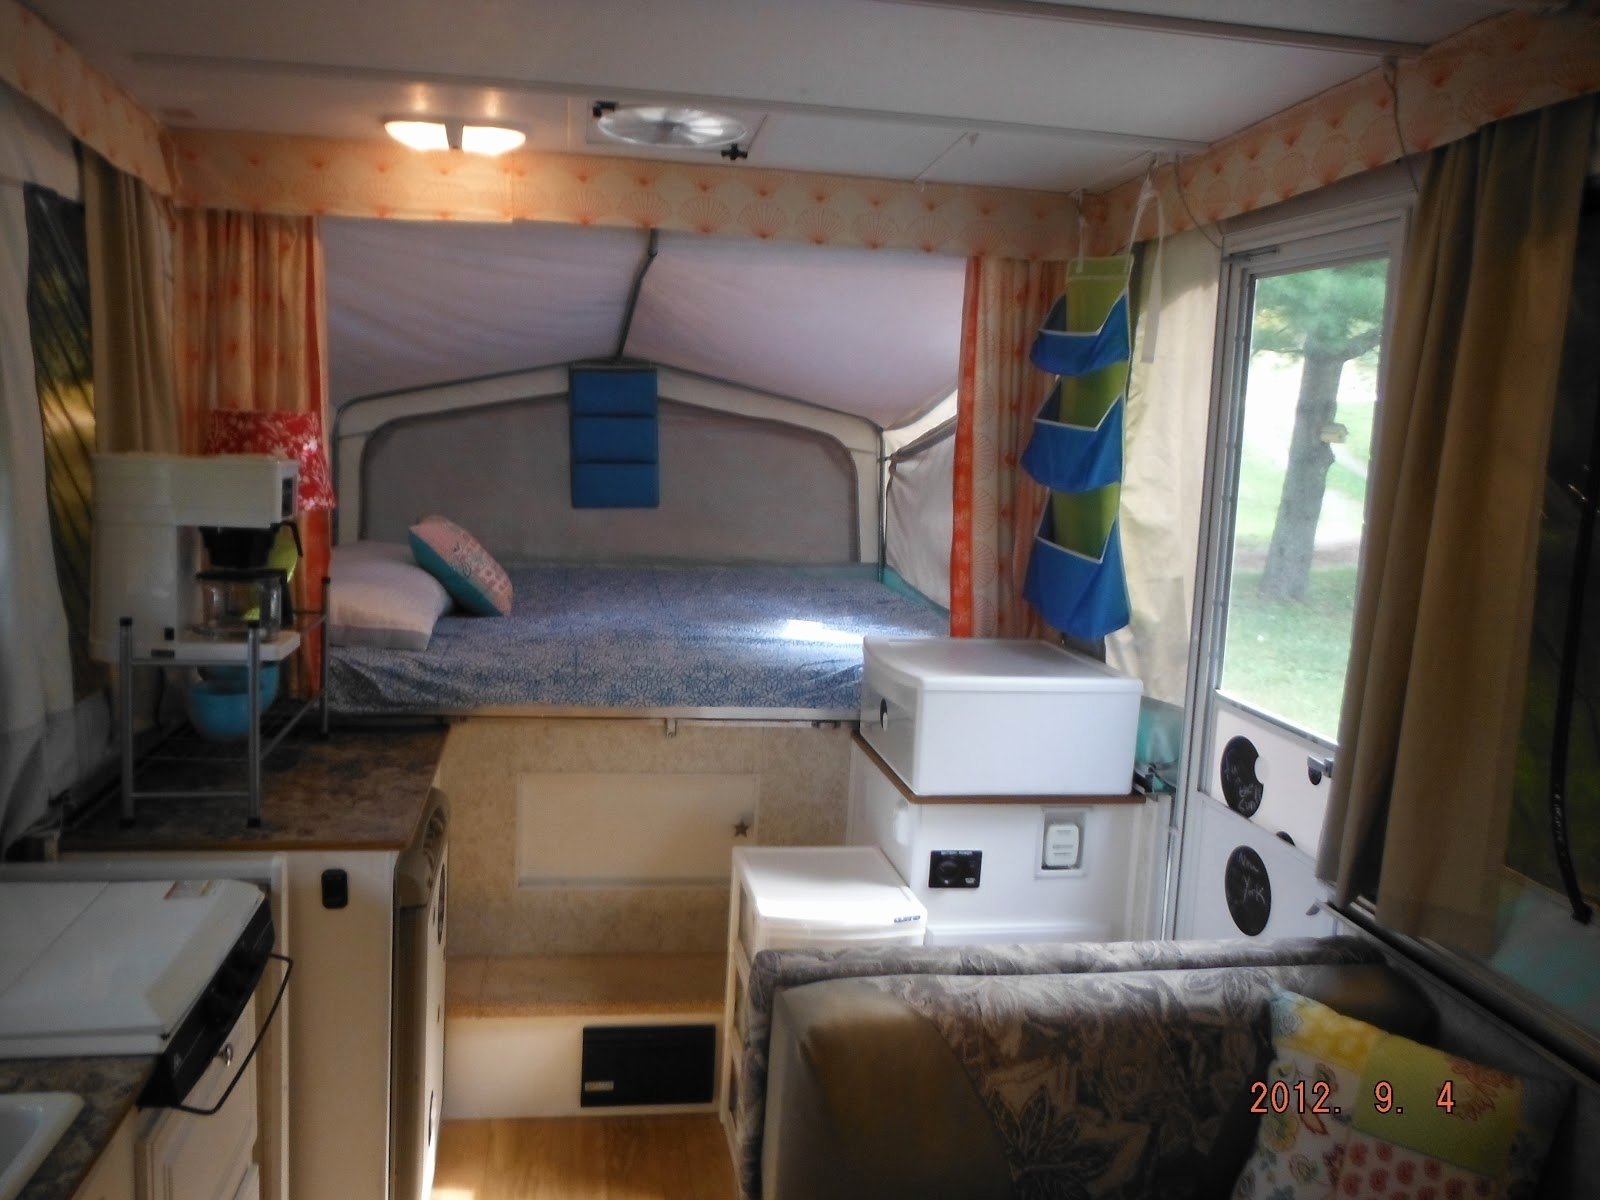 10 Lovable Pop Up Camper Storage Ideas camper kitchen ideas new storage tent trailer mods rv bedding ideas 2022